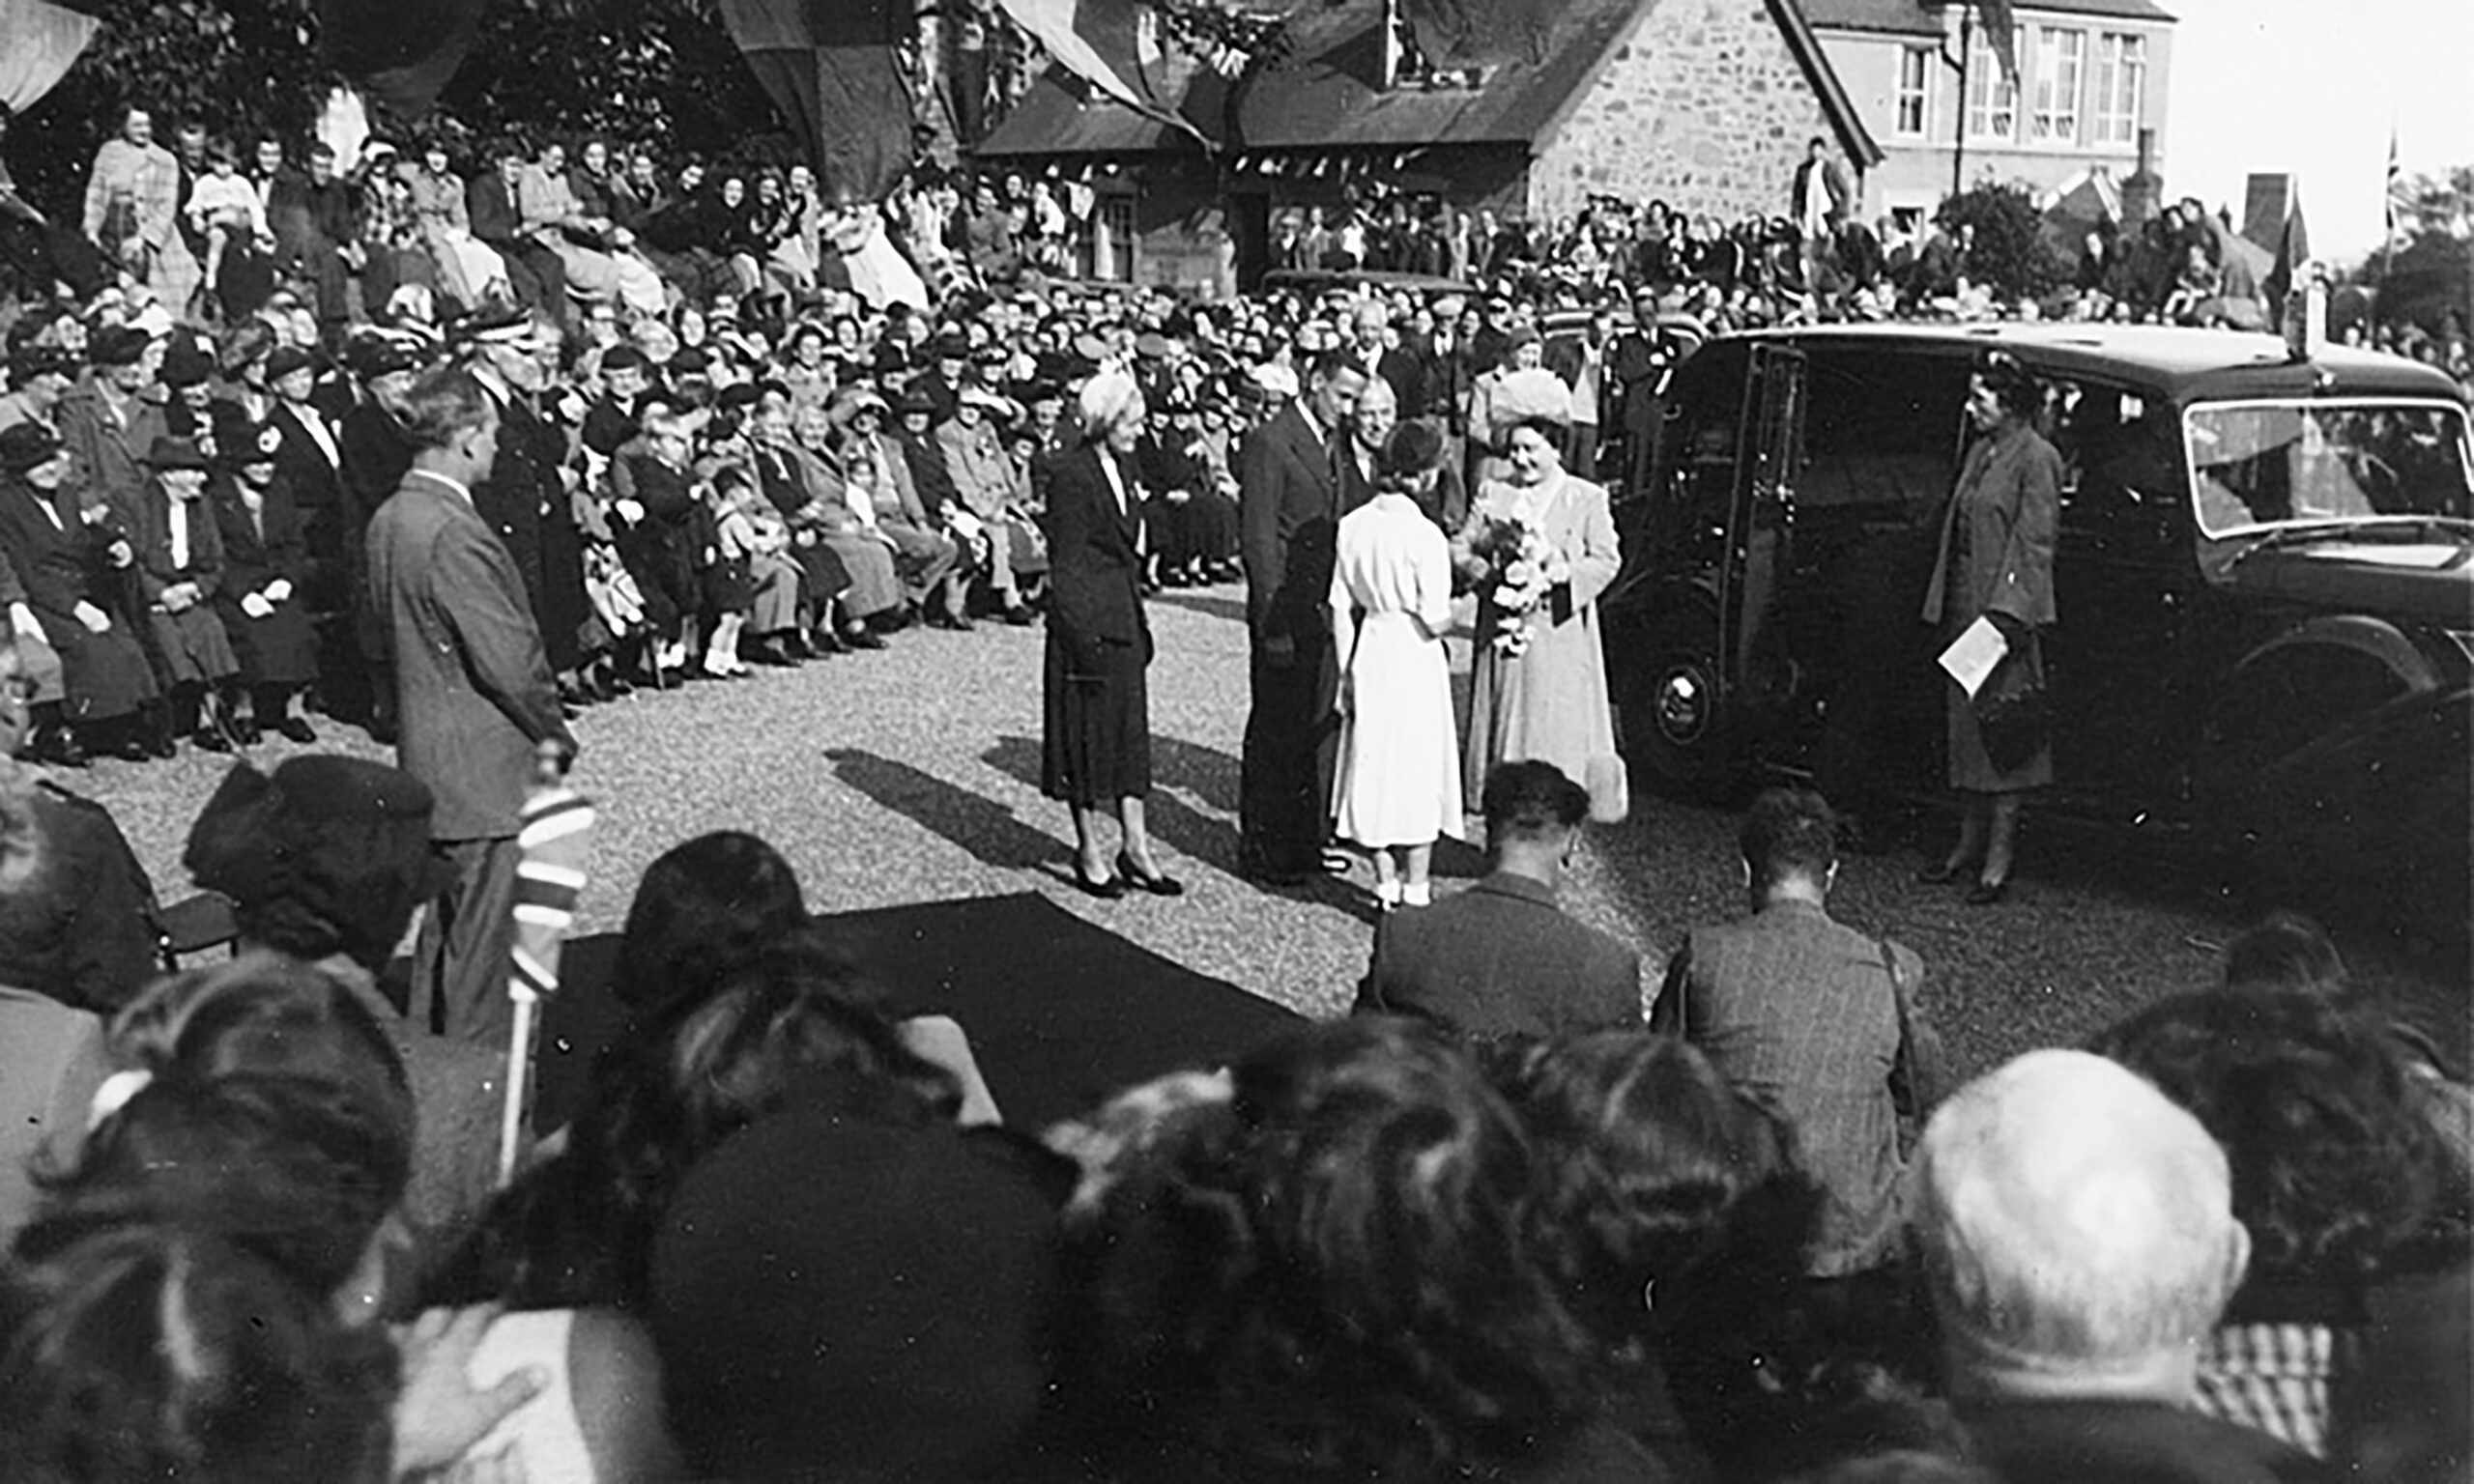 Tayport Heritage Trail - Board 10 - Visit of Queen Elizabeth the Queen Mother 19/9/1950